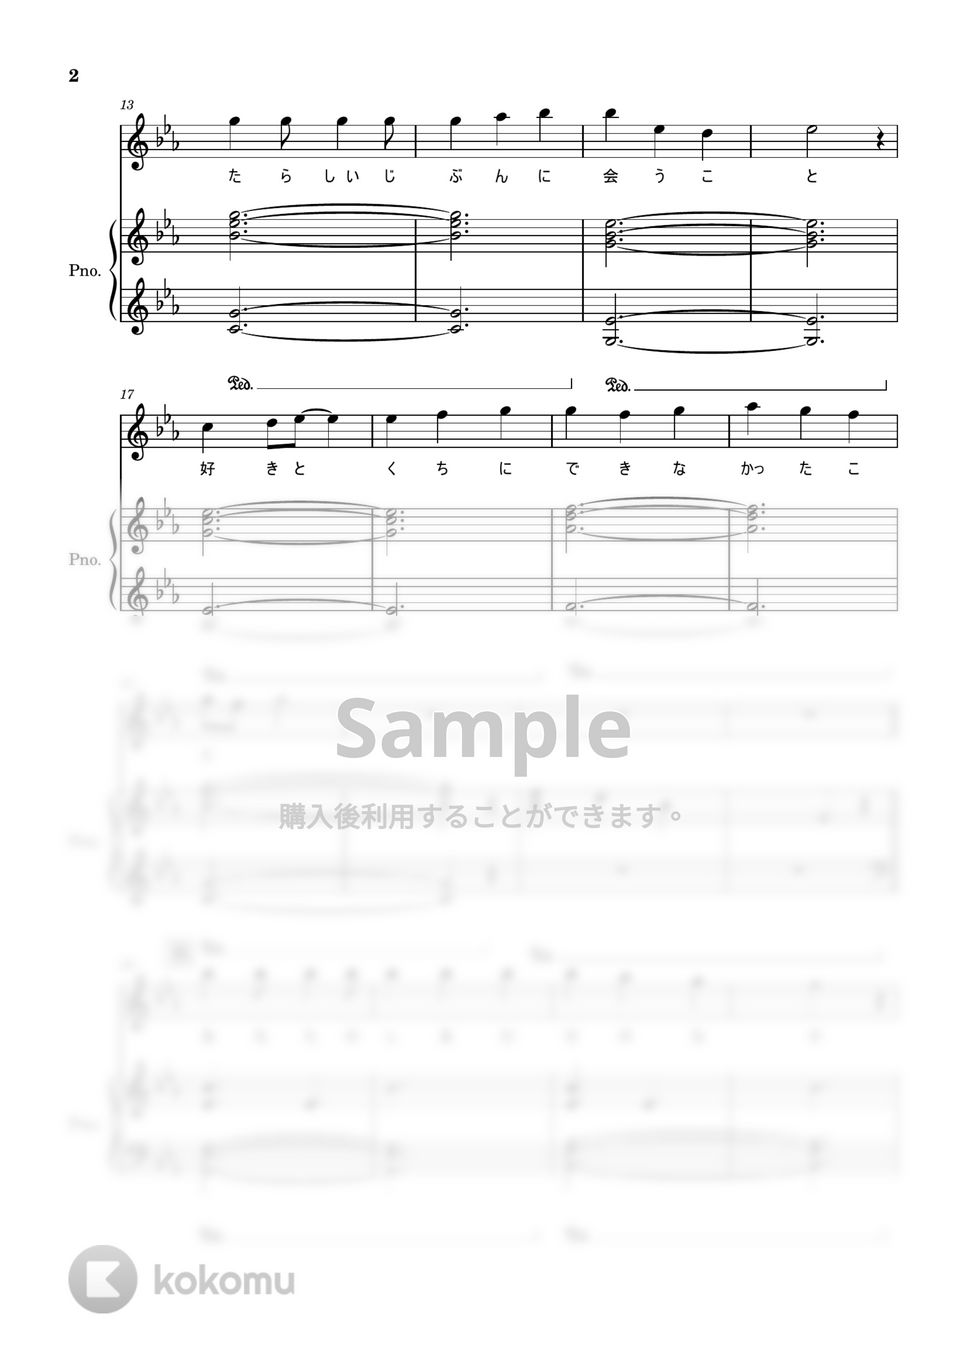 優里 - メリーゴーランド (かがみの狐城/ピアノ伴奏・弾き語り) by Saori8Piano